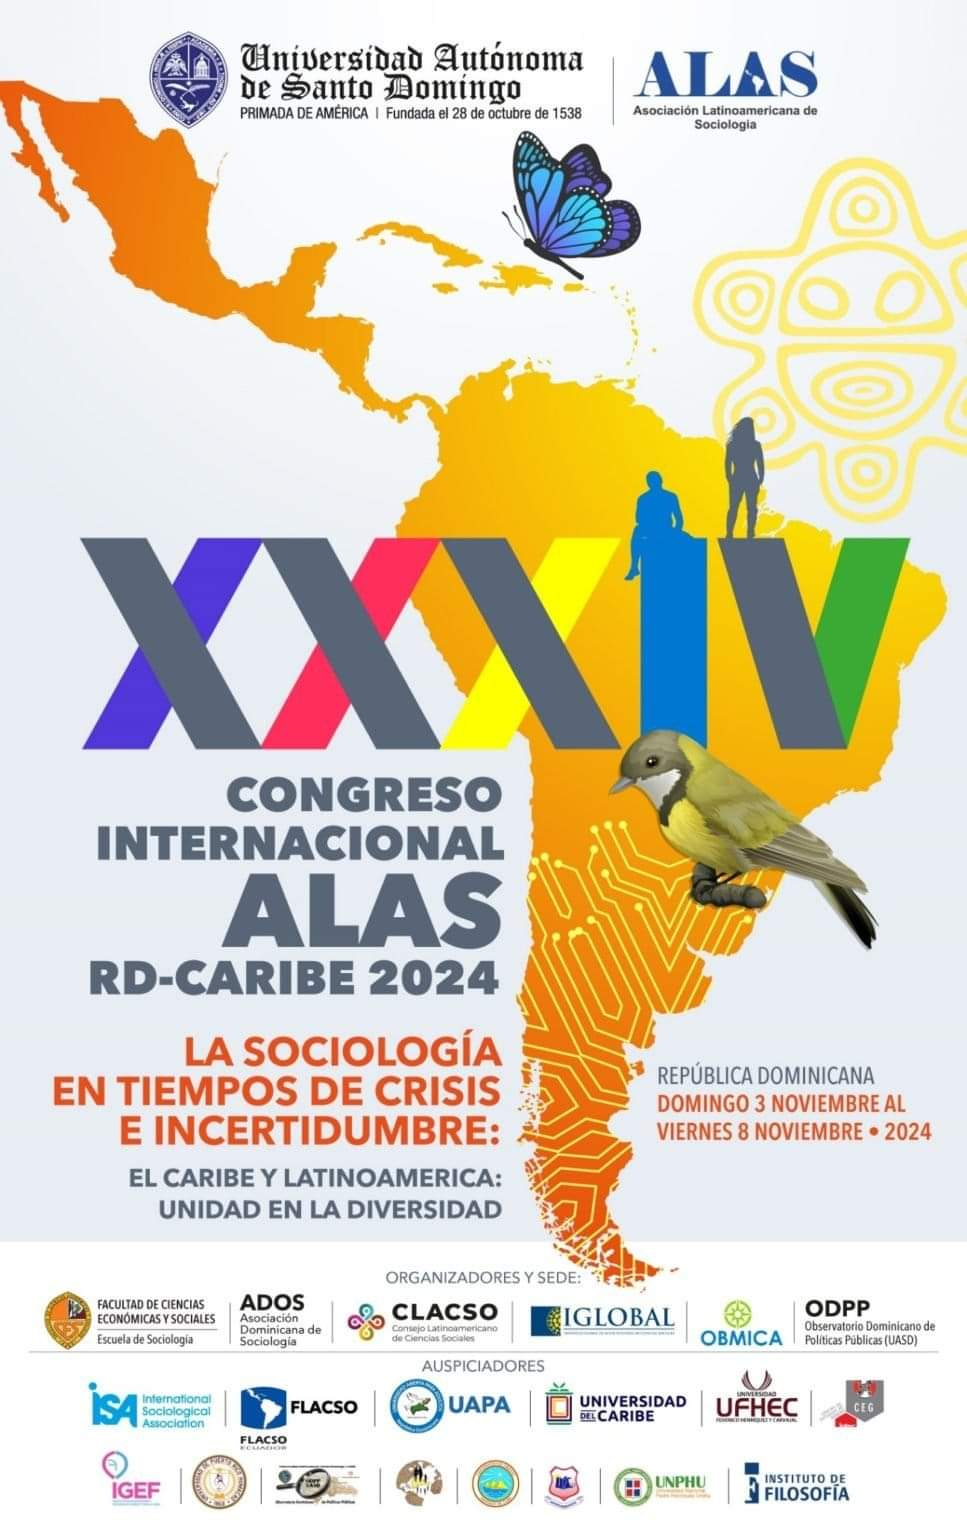 XXXIV Congreso Internacional ALAS RD-CARIBE 2024 | La sociología en tiempos de crisis e incertidumbre